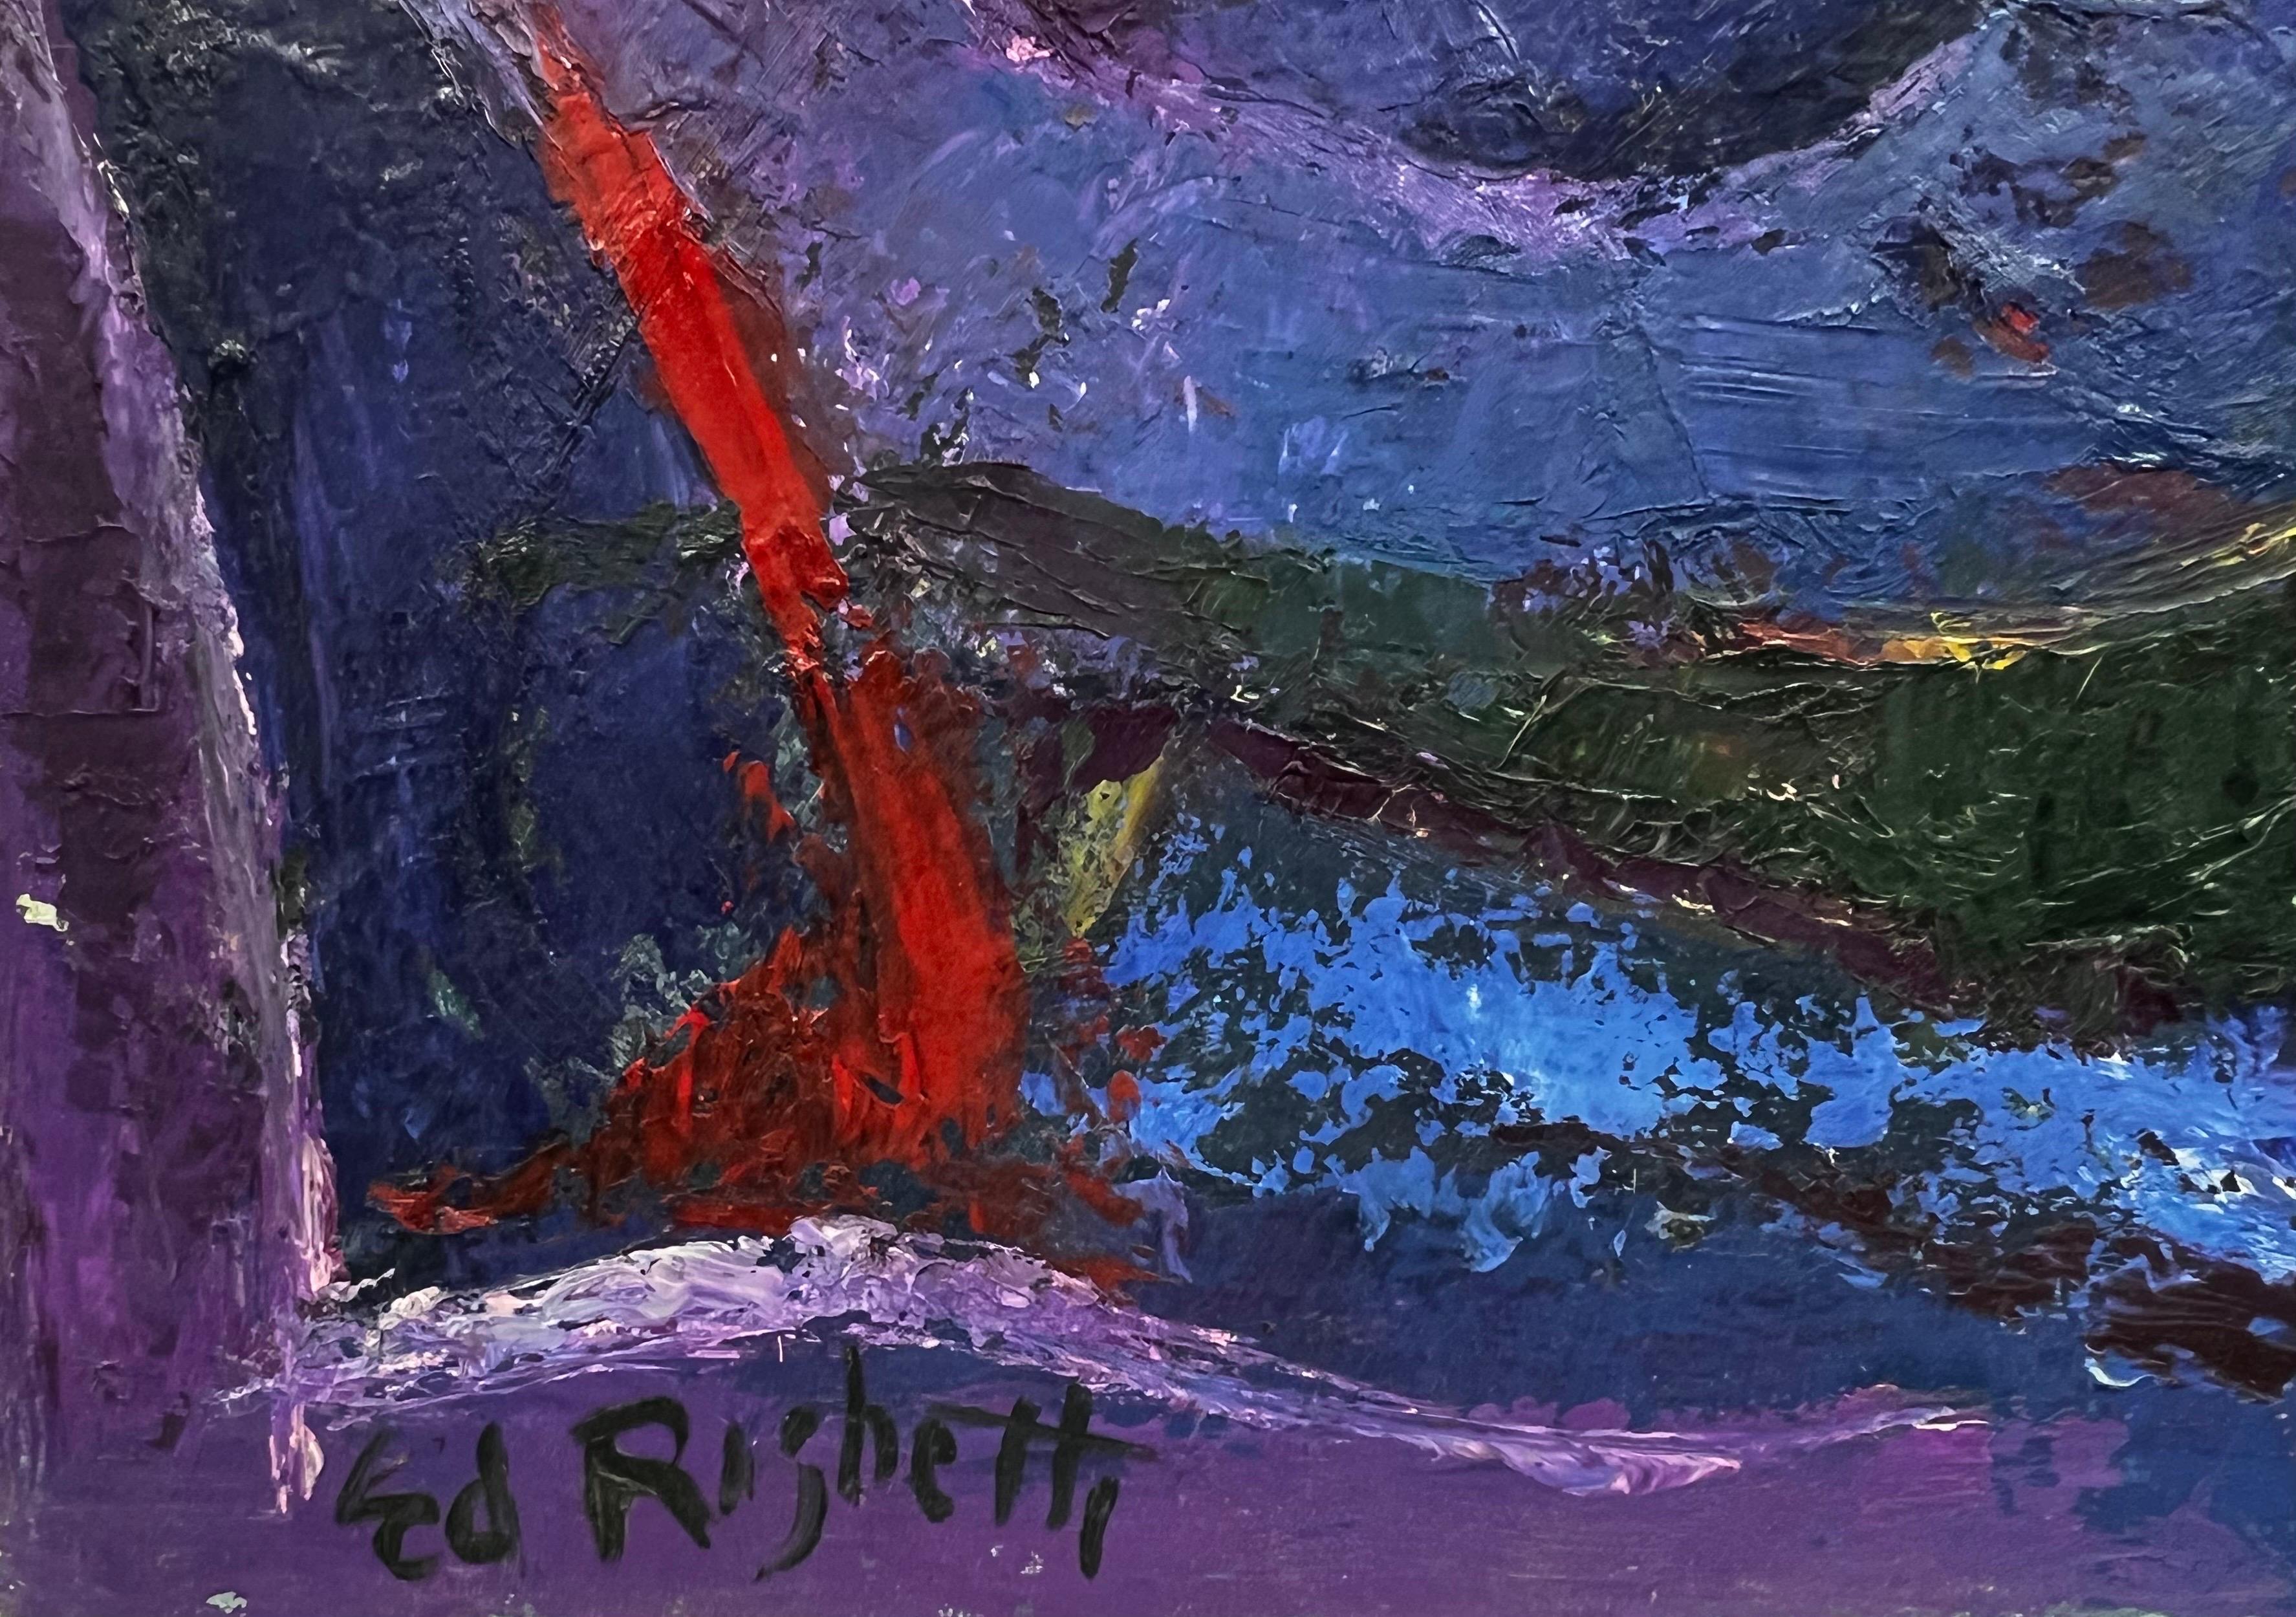 Résumé
par Édouard Righetti (1924-2001)

Signé en bas du front 
peinture à l'huile sur toile, magnifiquement peinte avec de l'huile d'empâtement épaisse et des couleurs audacieuses. 
très bonne condition

taille : 21 pouces x 25.5 pouces

provenance